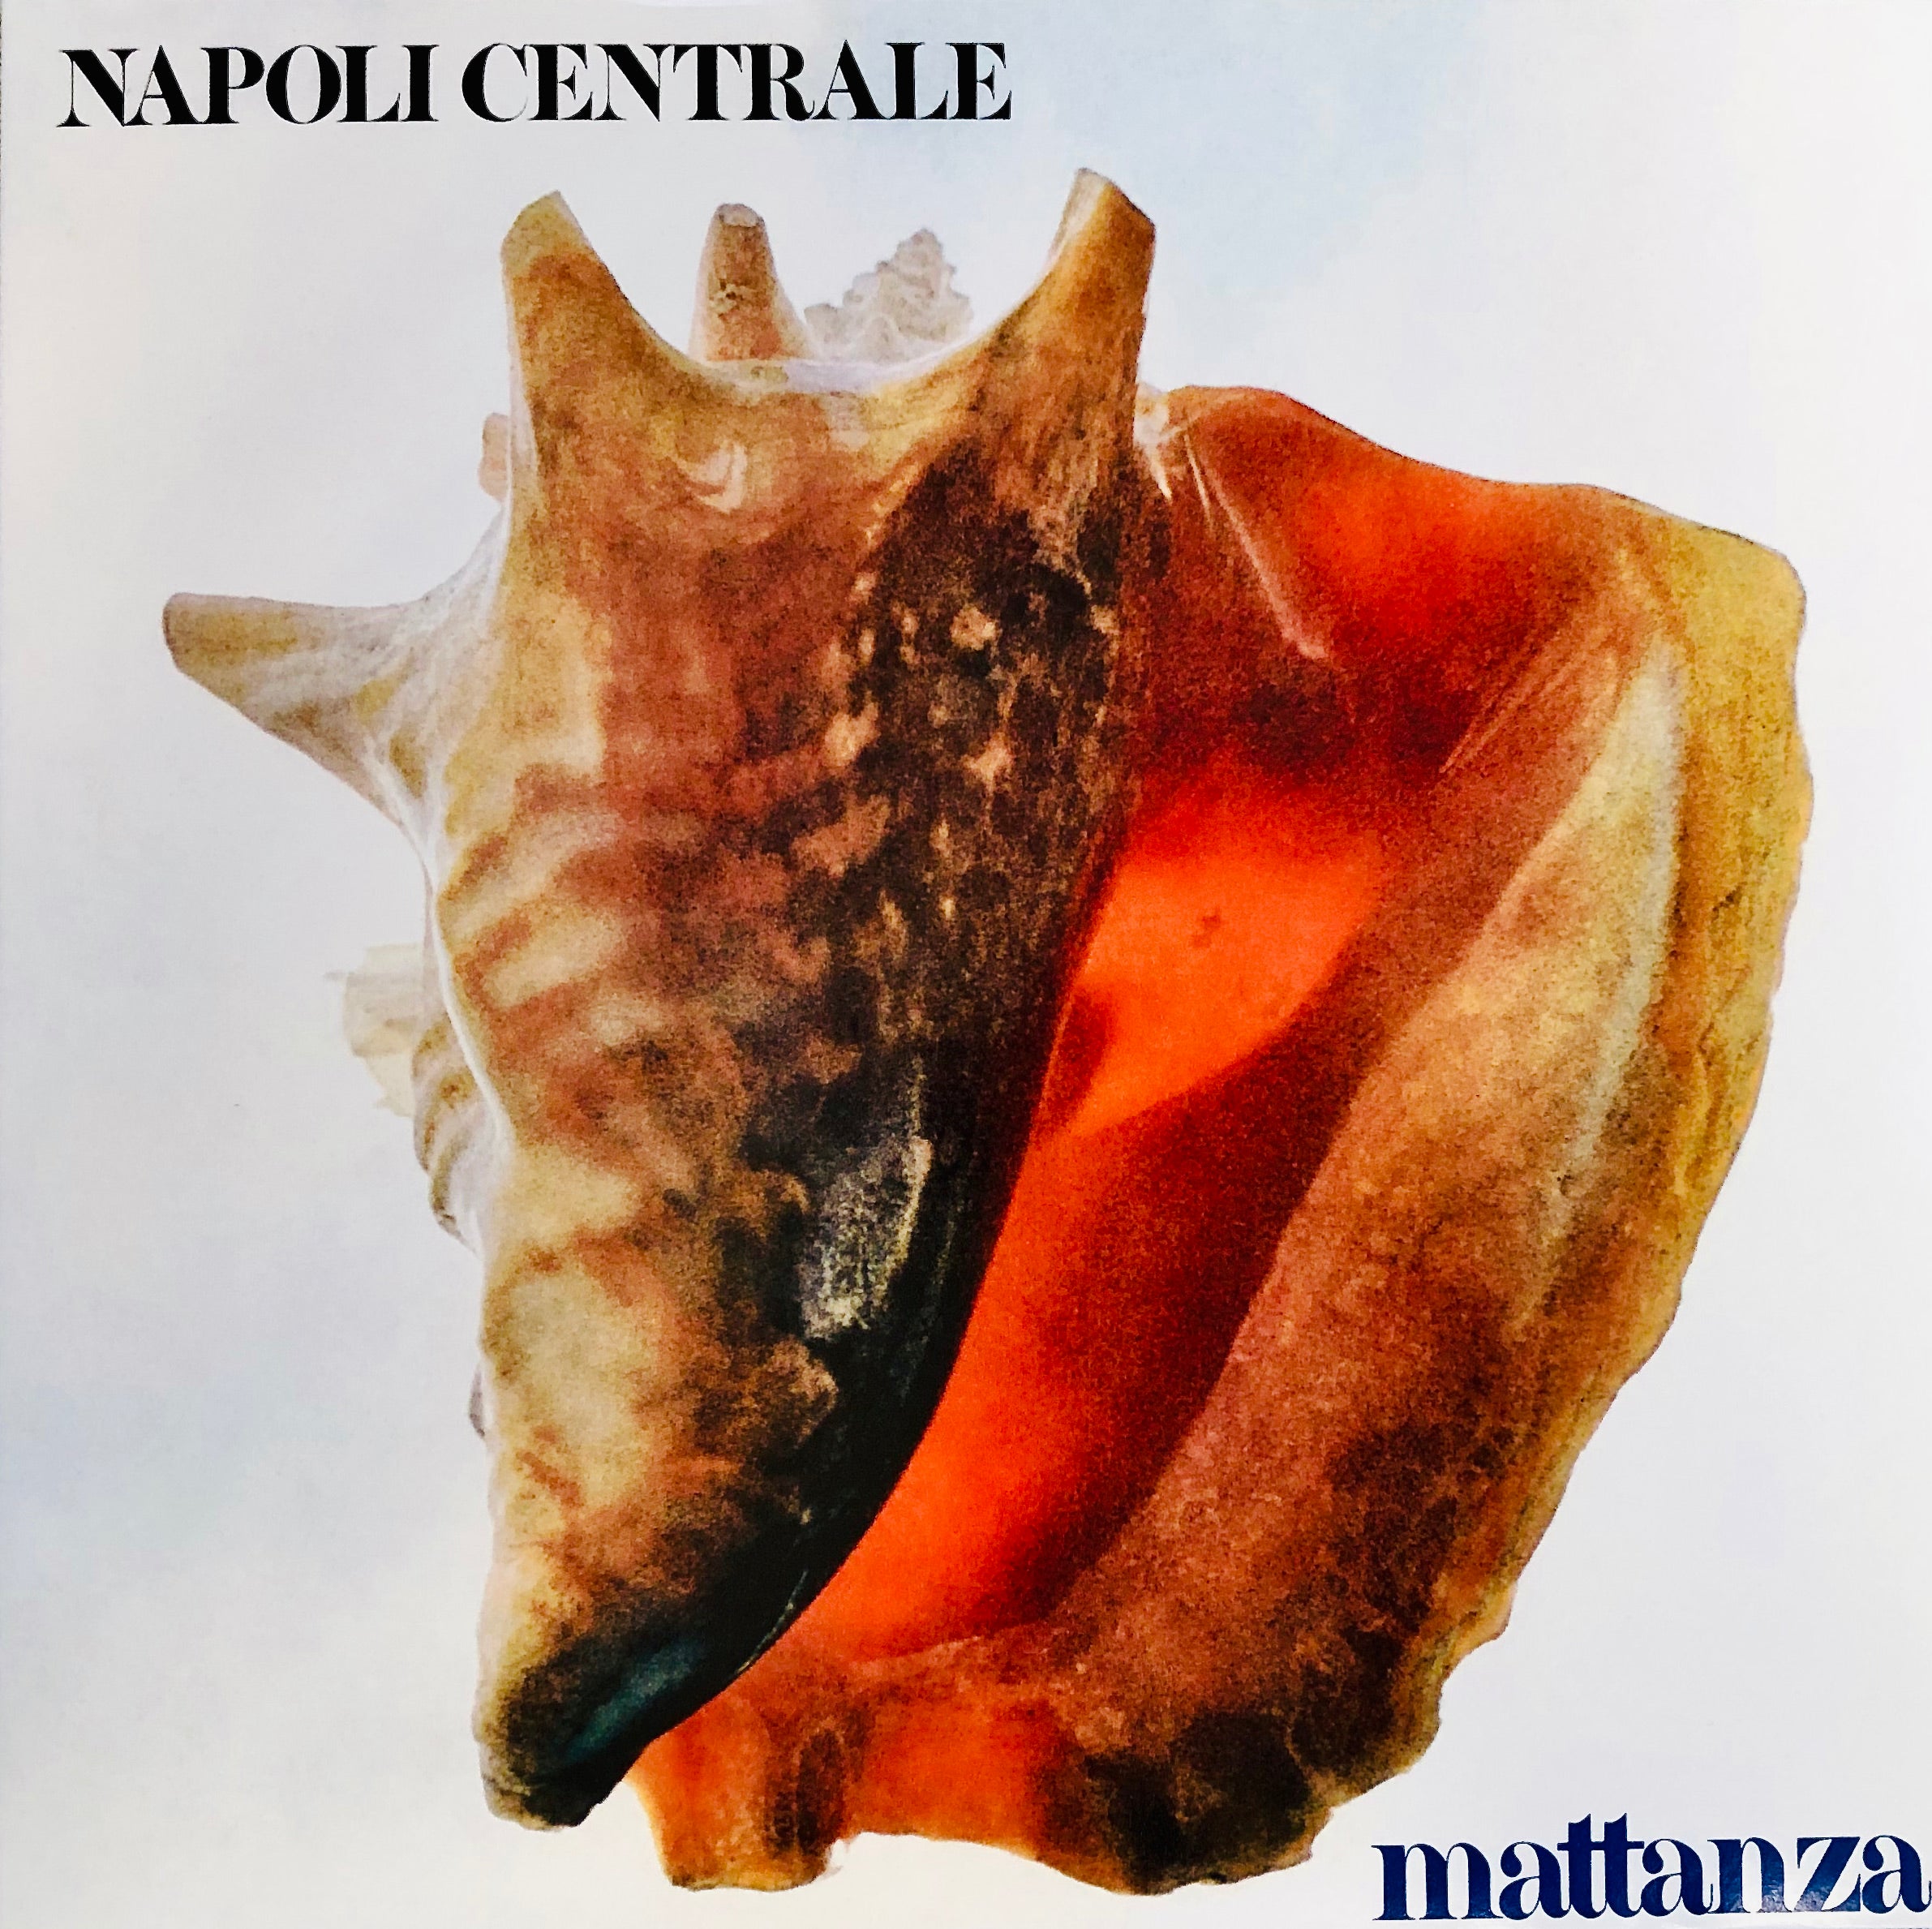 NAPOLI CENTRALE - Mattanza - Vinile Arancione Trasparente (Clear Orange  Vinyl)